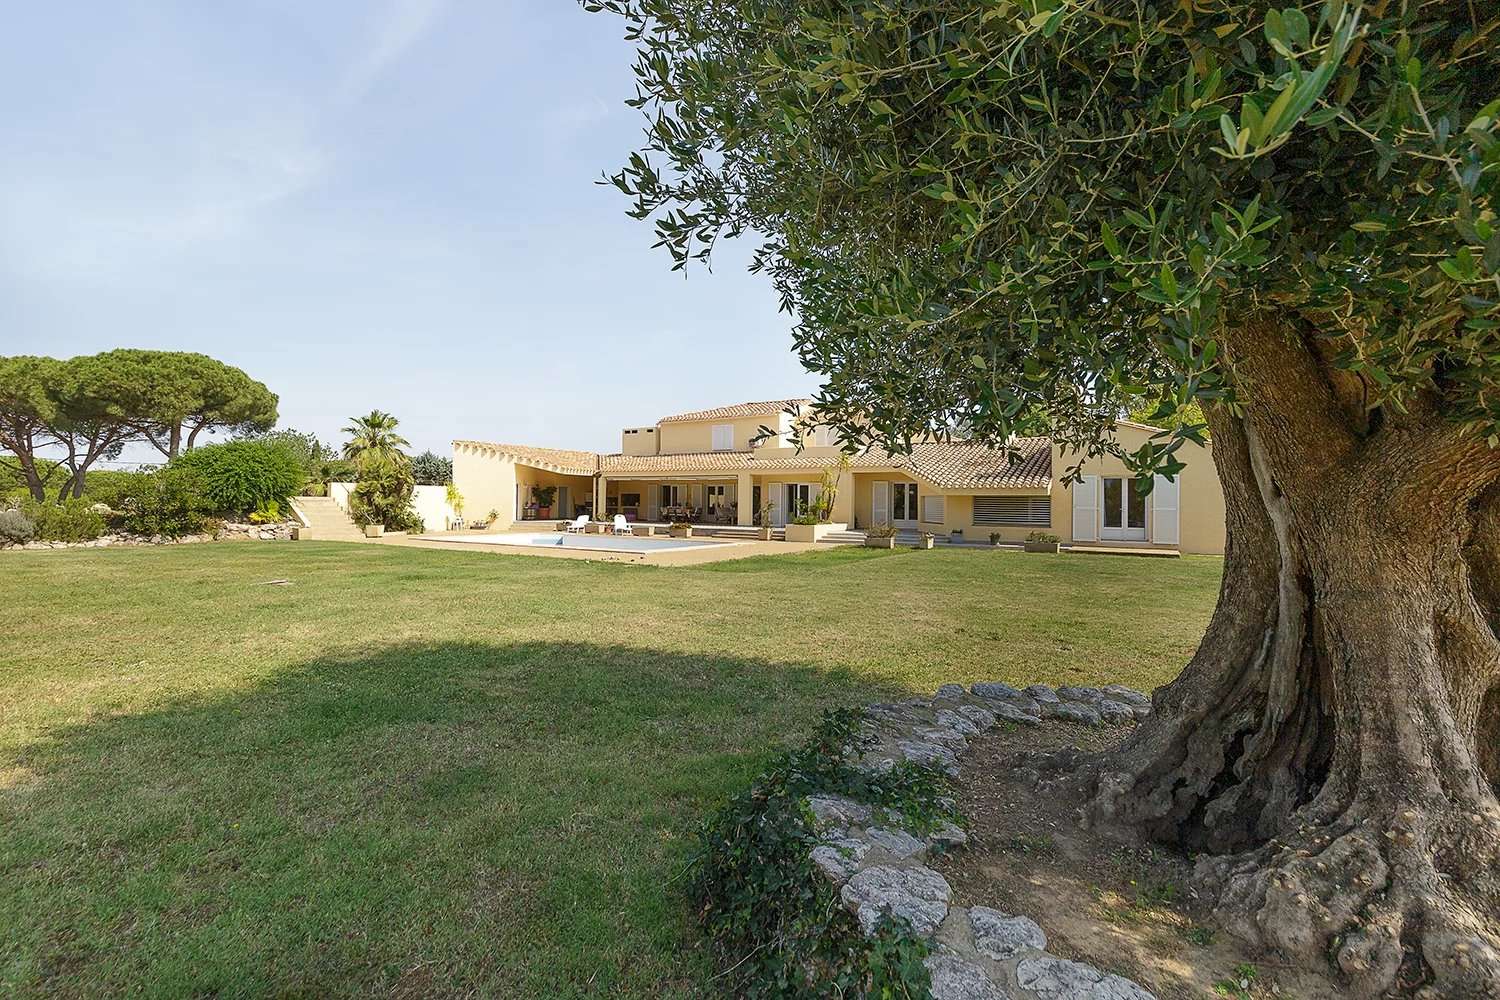  à vendre villa Perpignan Pyrénées-Orientales 1